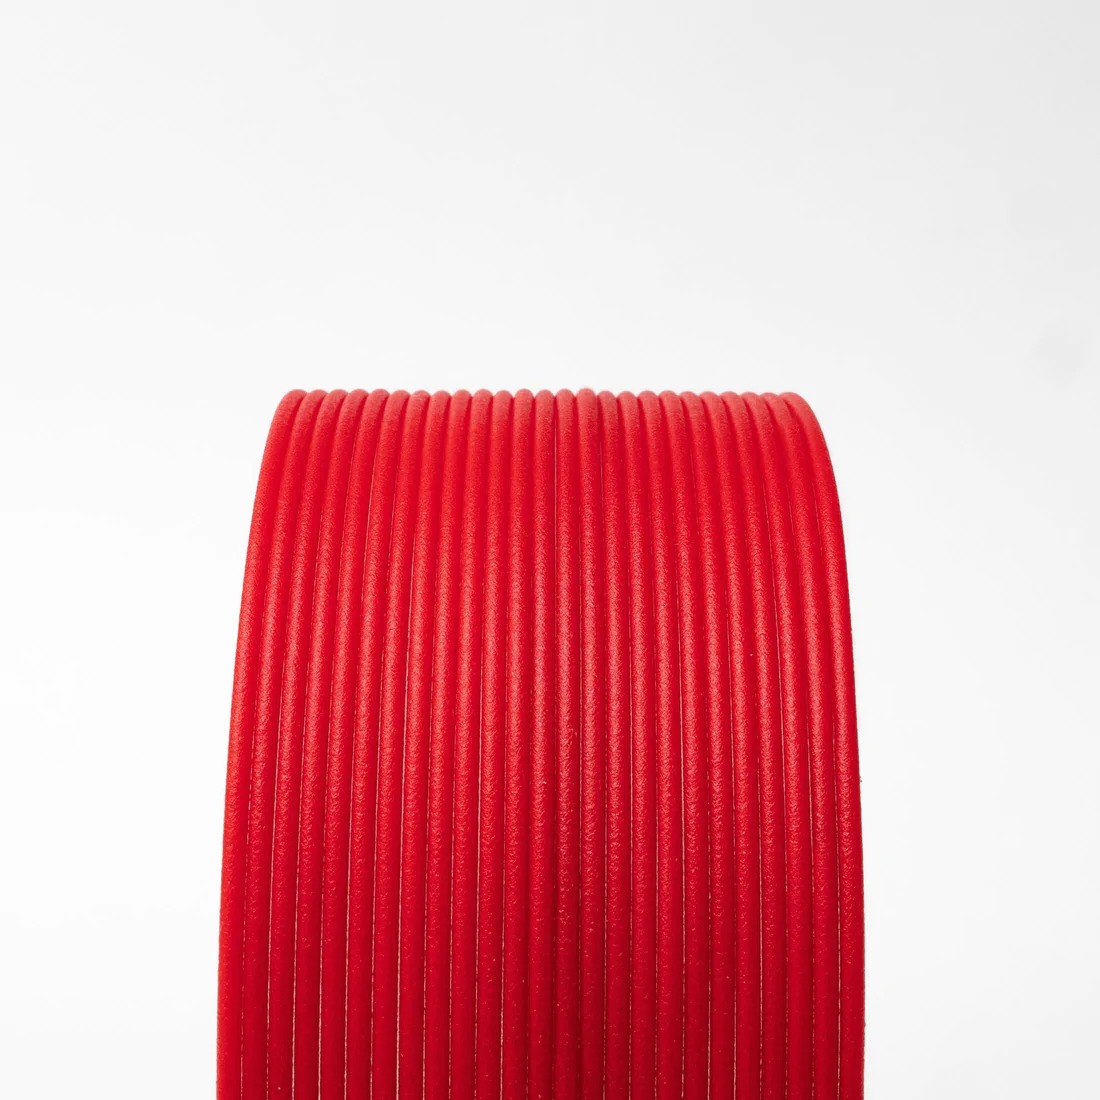 High Temp PLA Matte Fibre Red 1.75mm 3D printing Filament